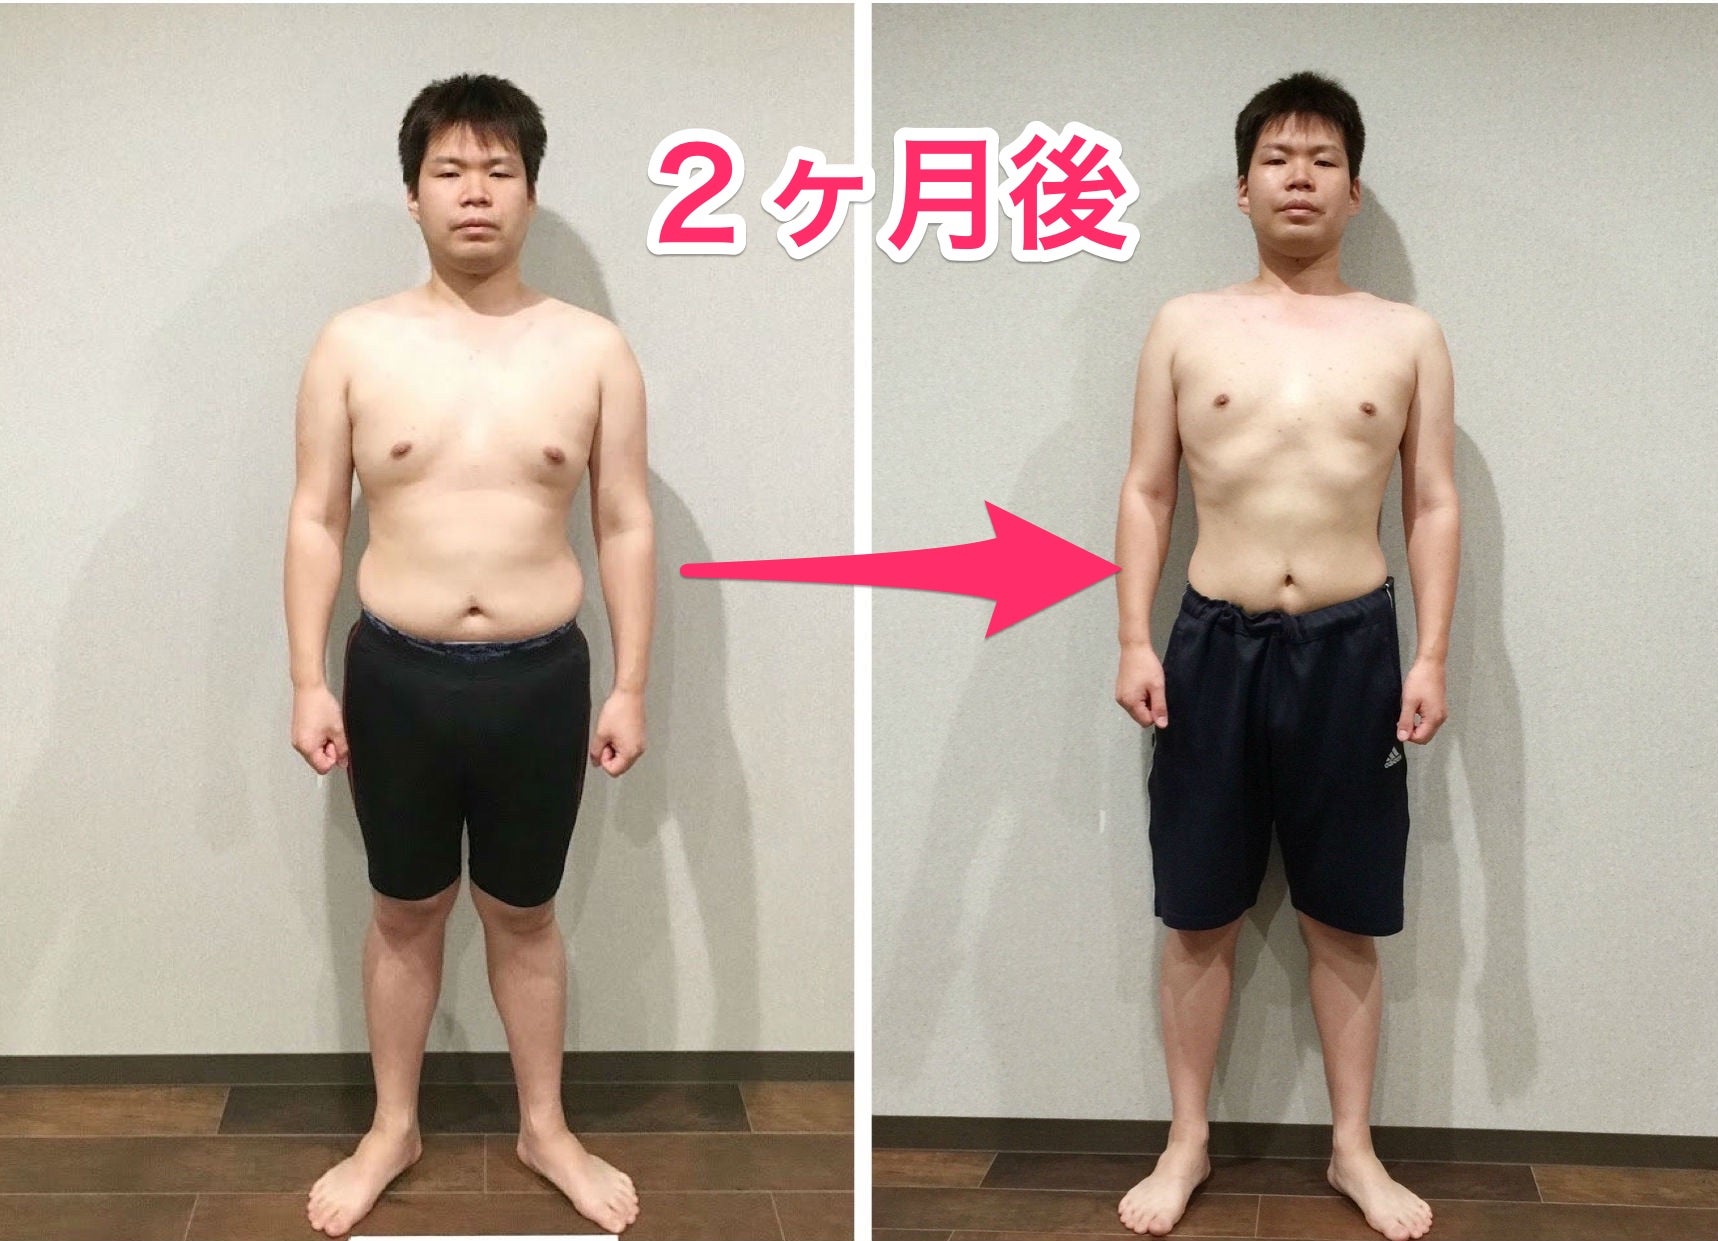 絶えず 団結する リネン 2 ヶ月 で キロ 痩せる に は Iroishi Jp